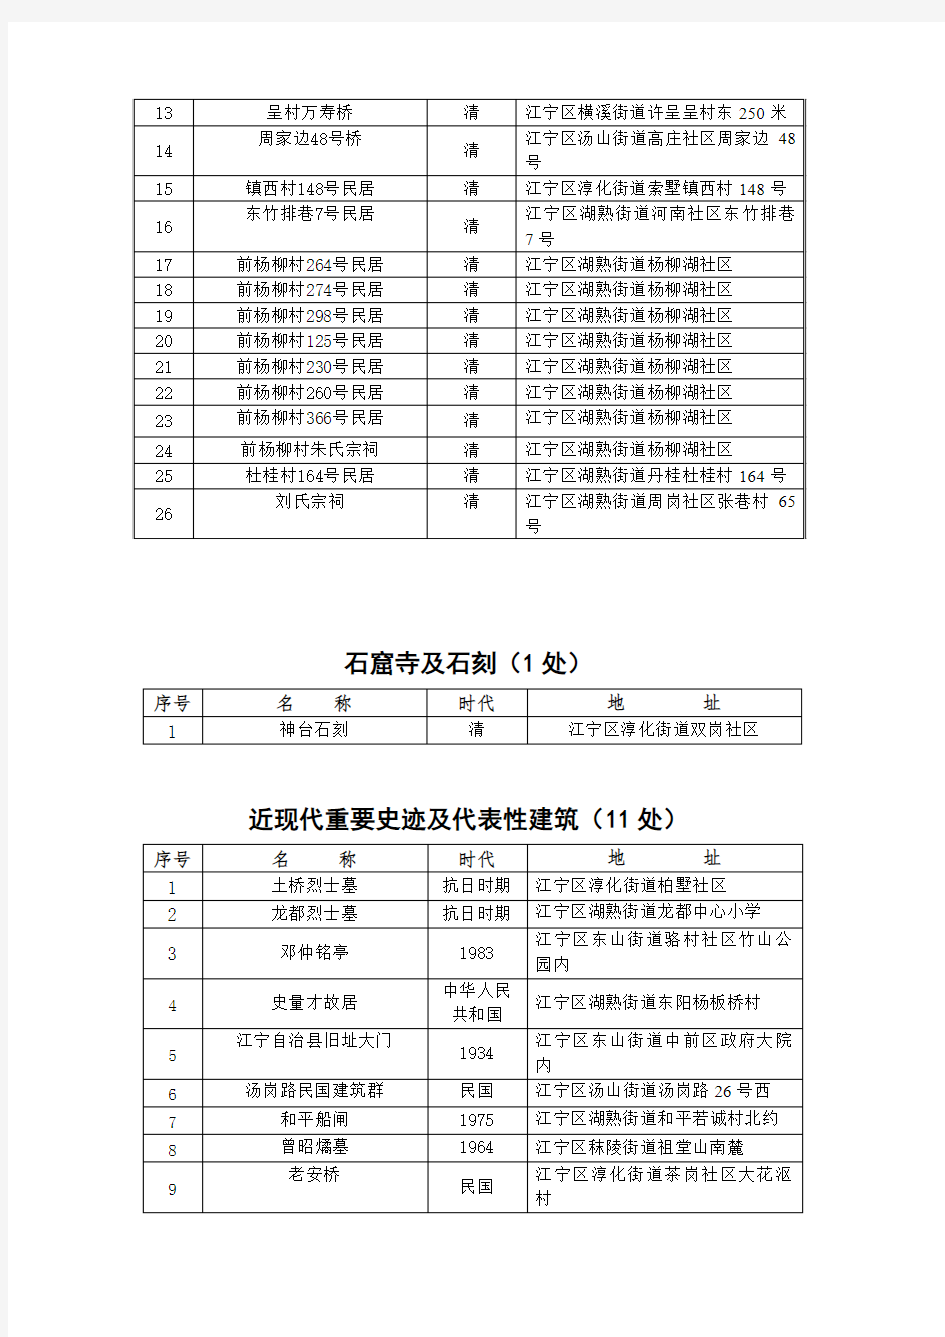 江宁区区级文物保护单位及不可移动文物名单(截止2018年8月)